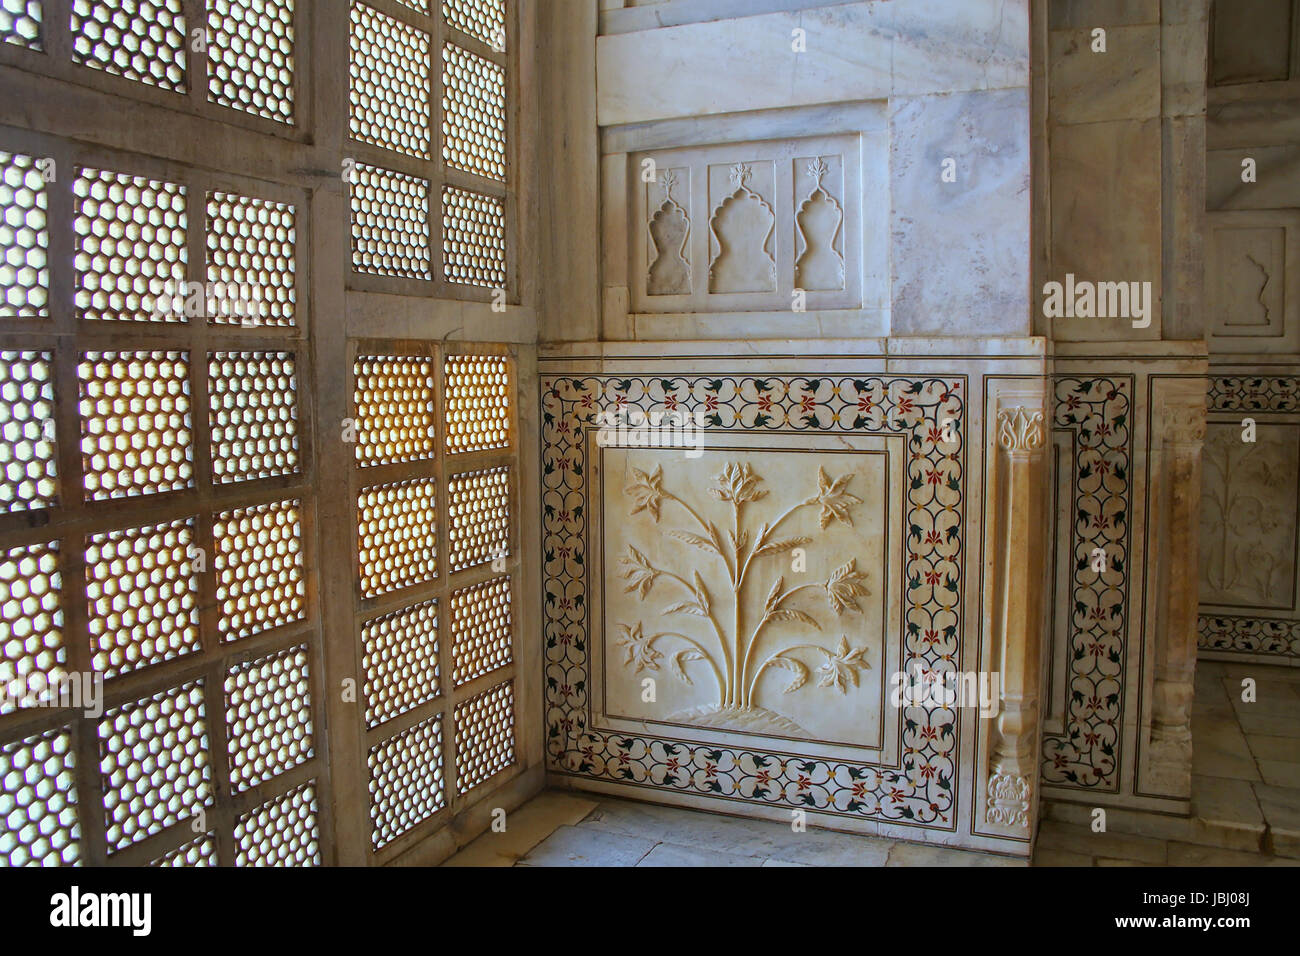 Traliccio jali schermo e parete decorata all'interno del Taj Mahal, Agra, Uttar Pradesh, India. Fu costruito nel 1632 dall'imperatore Mughal Shah Jahan in casa th Foto Stock